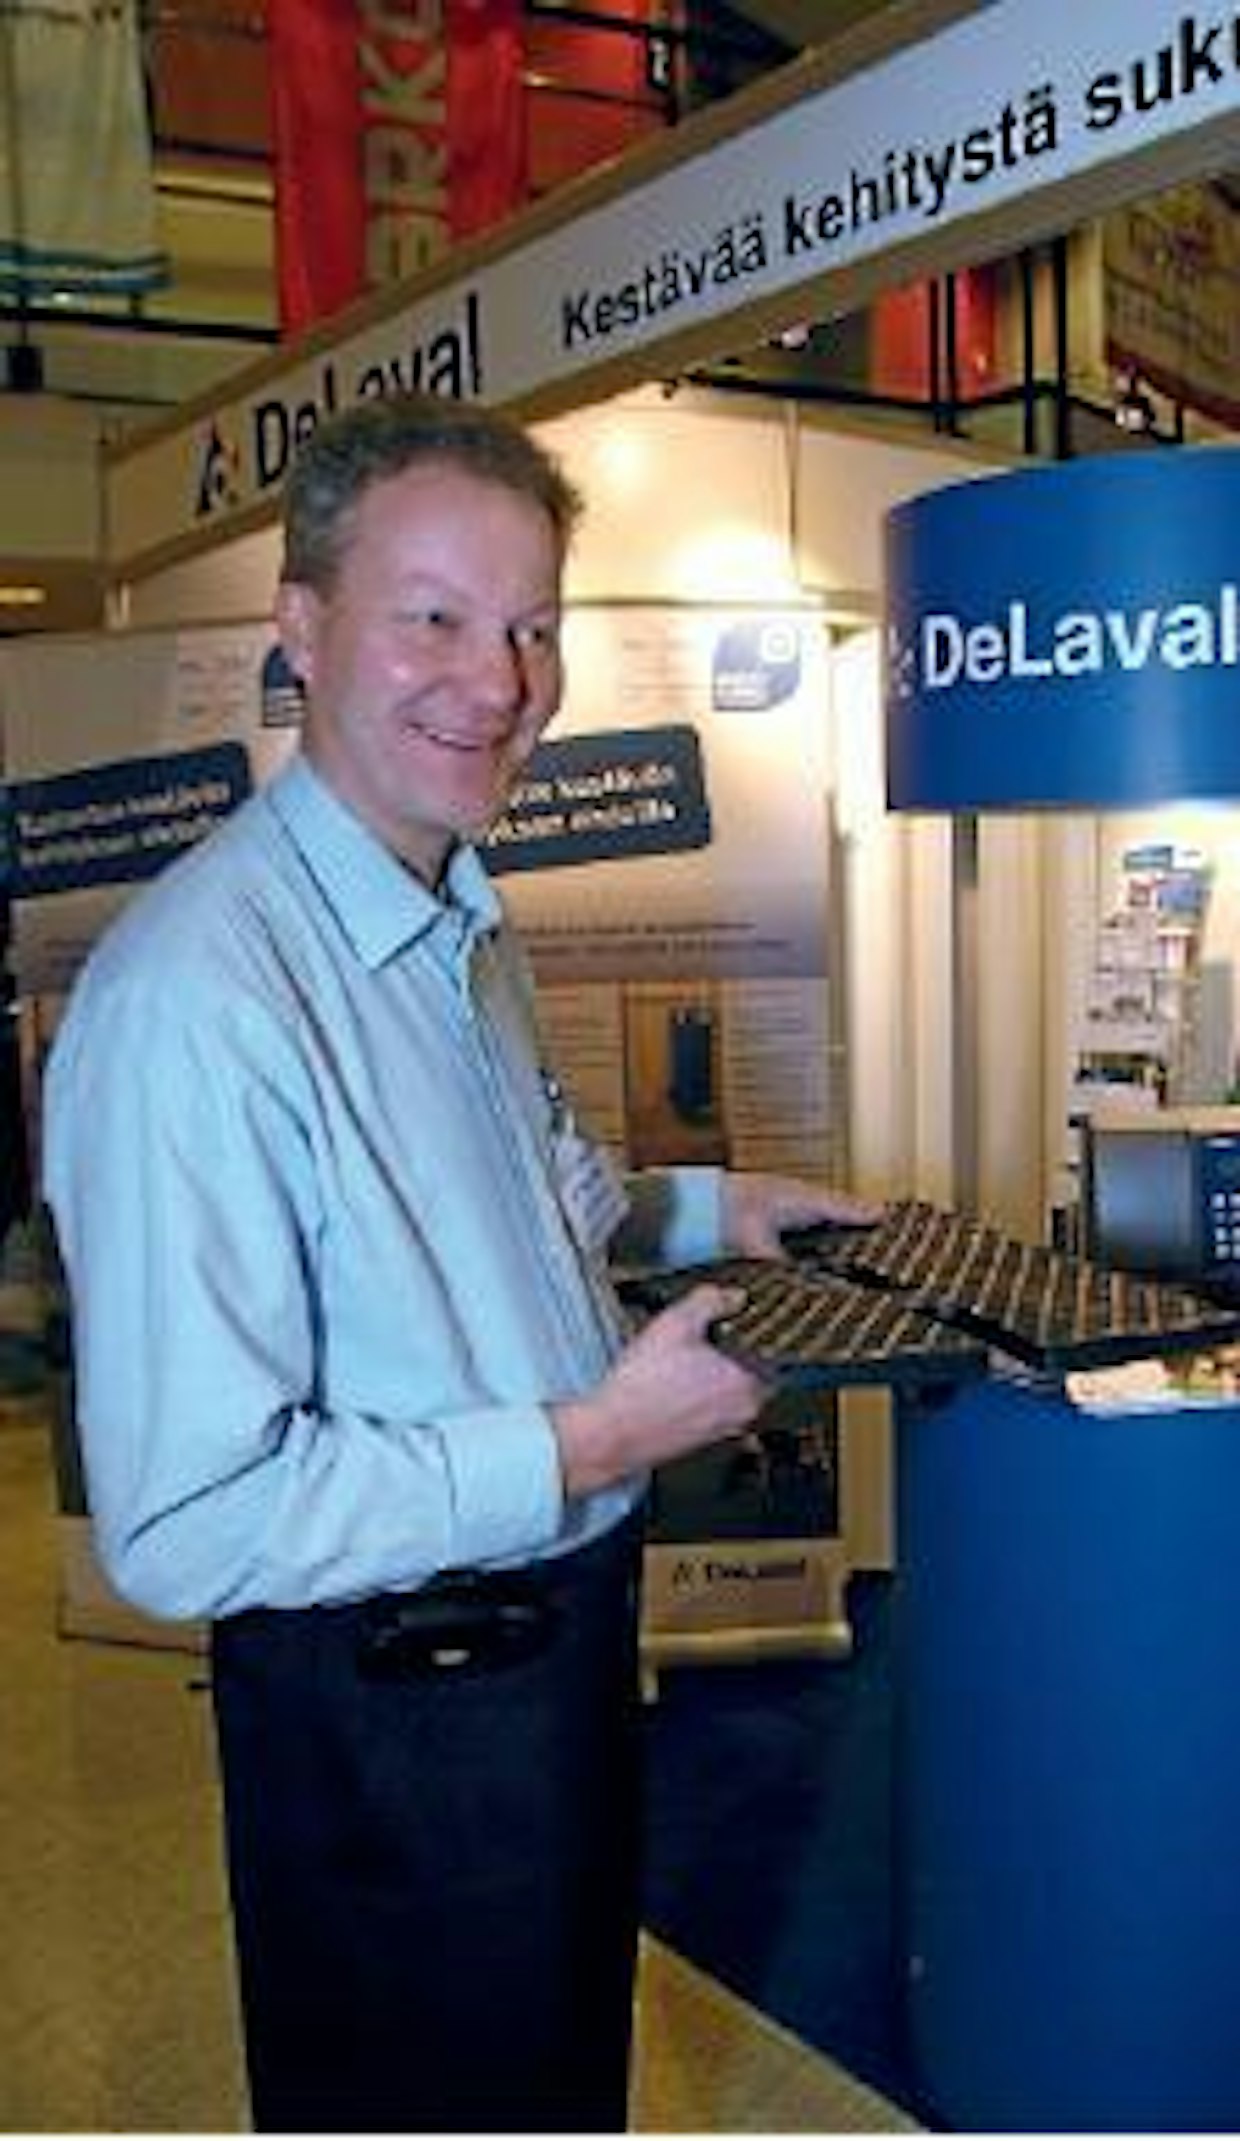 DeLaval on tuonut markkinoille uuden kumimaton käytettäväksi ritilöiden päällä, esittelee Olli Kasurinen. Matto on palkin kohdalta muotoiltu siten, että palkin keskiosa on korkeammalla. Näin nesteen valuminen lantakouruun tehostuu.